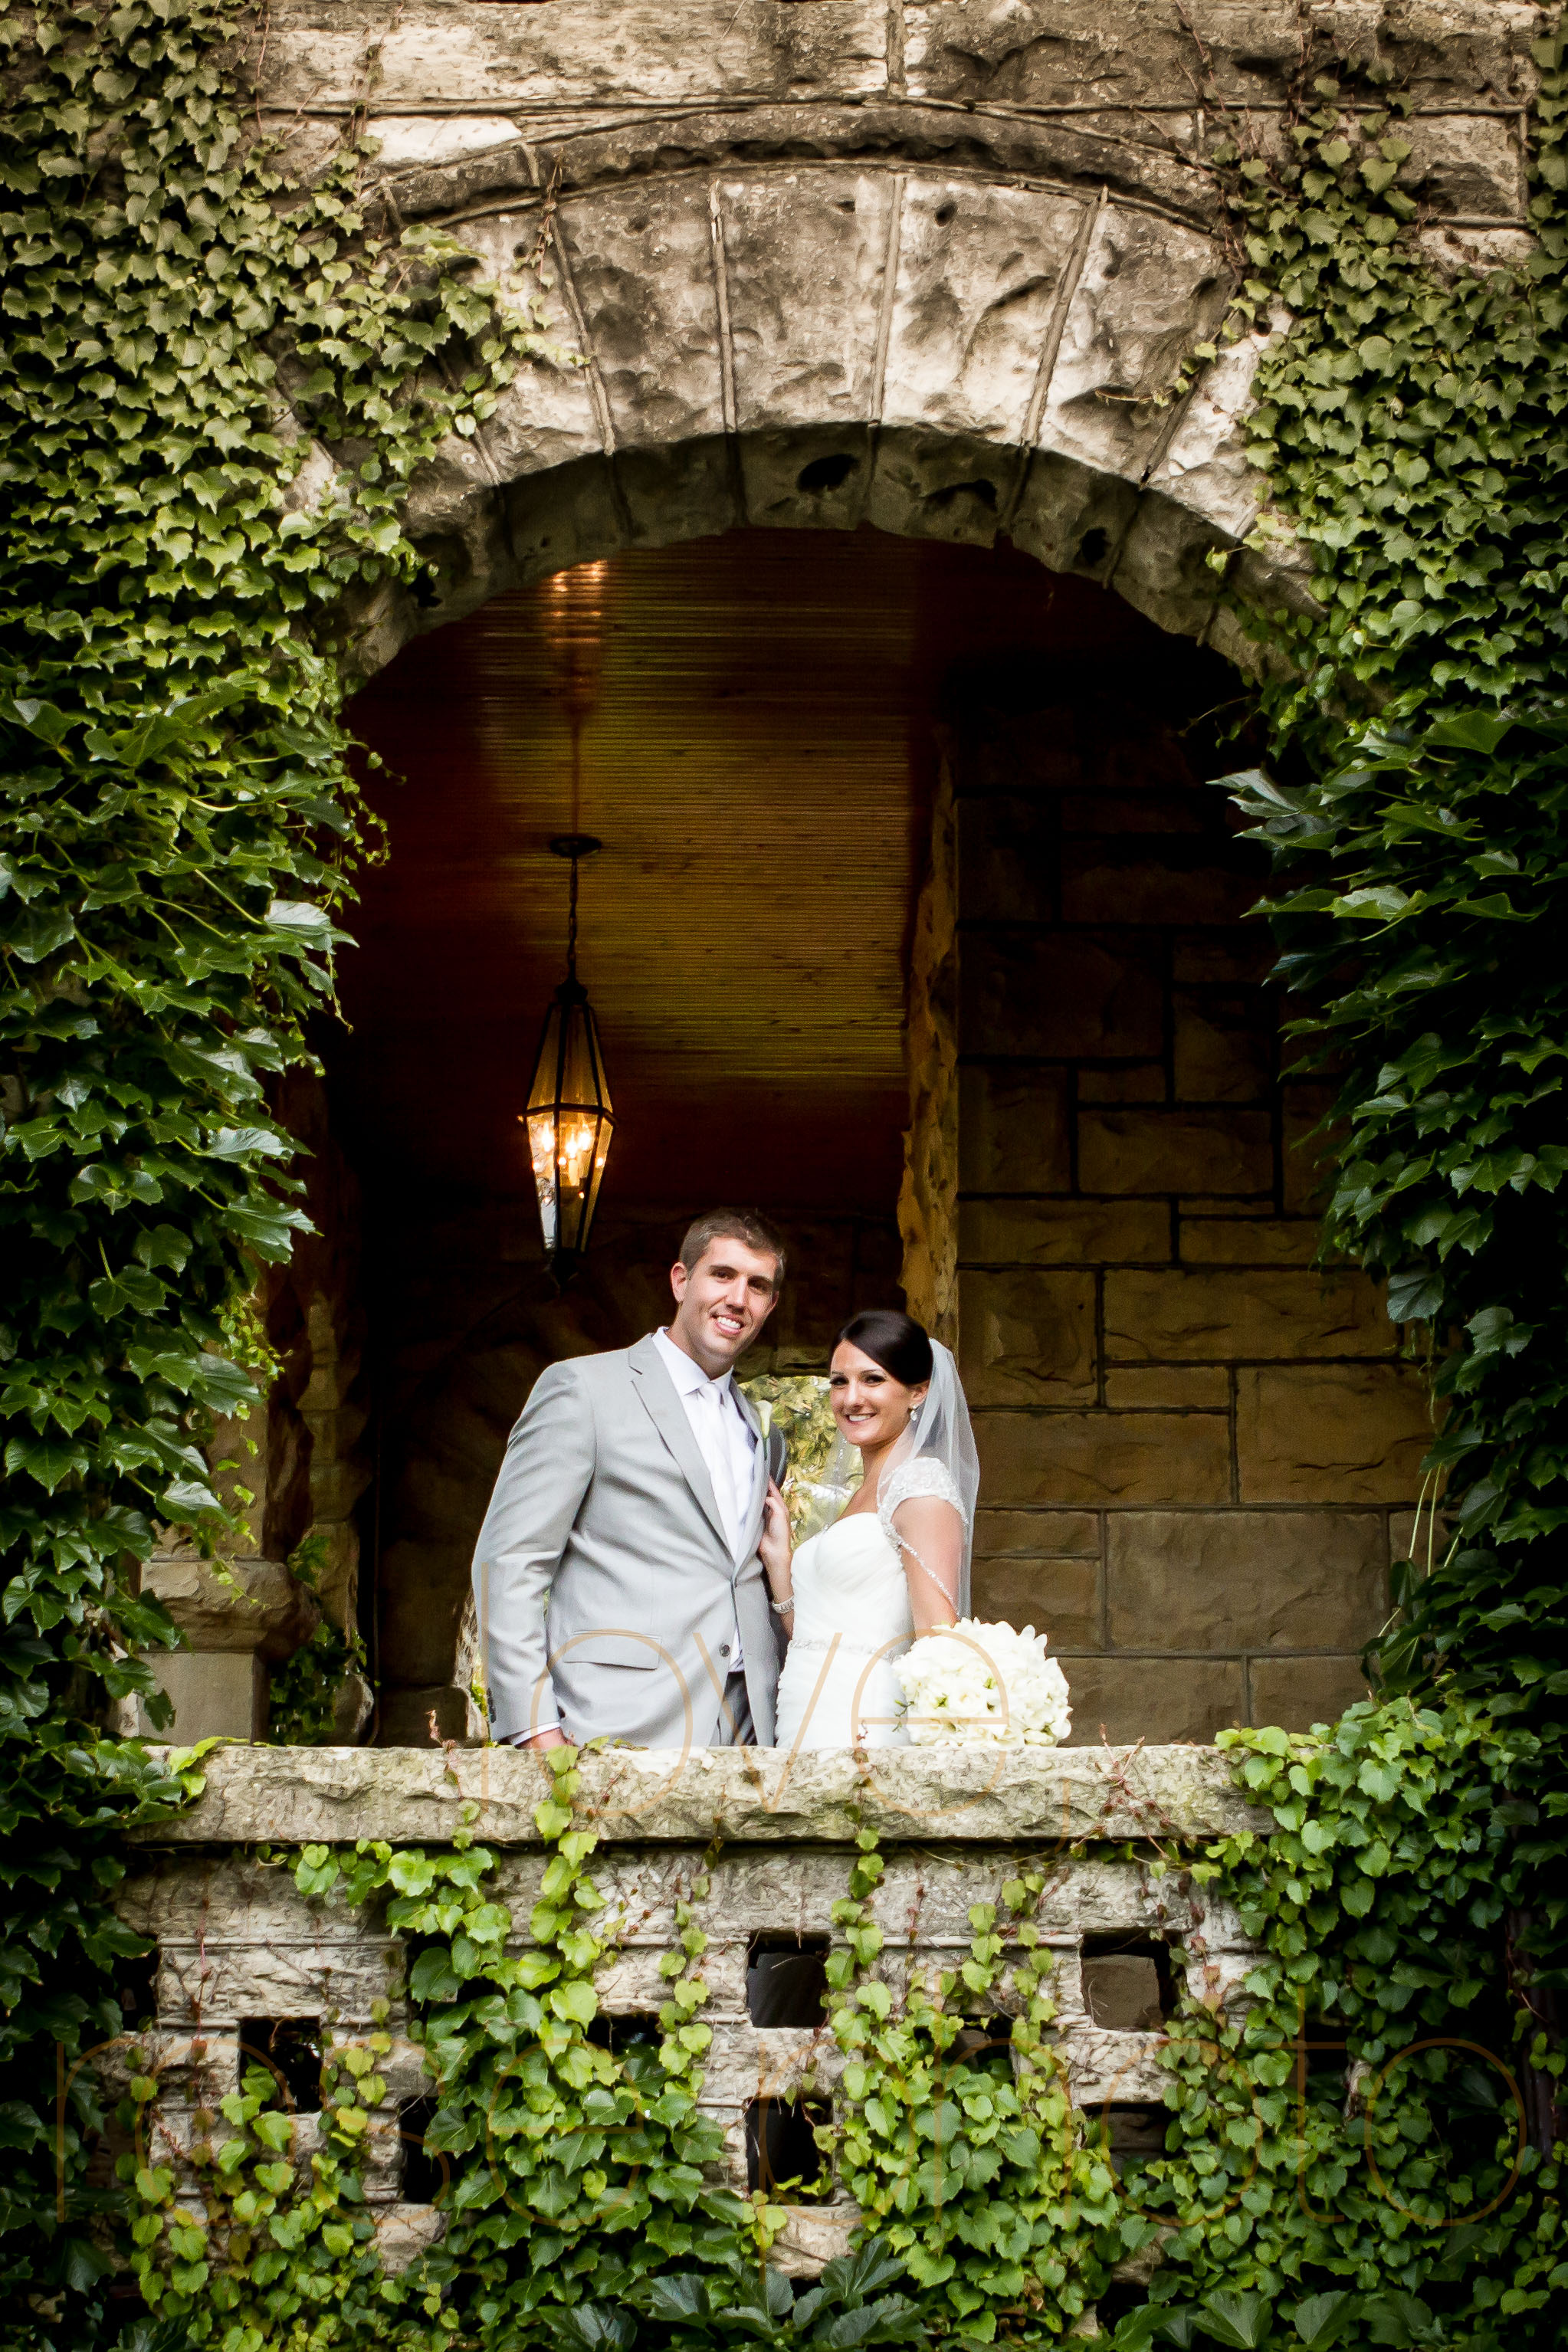 ellen + bryan chicago wedding joliet james healy mansion portrait lifestyle photojournalist photographer -016.jpg